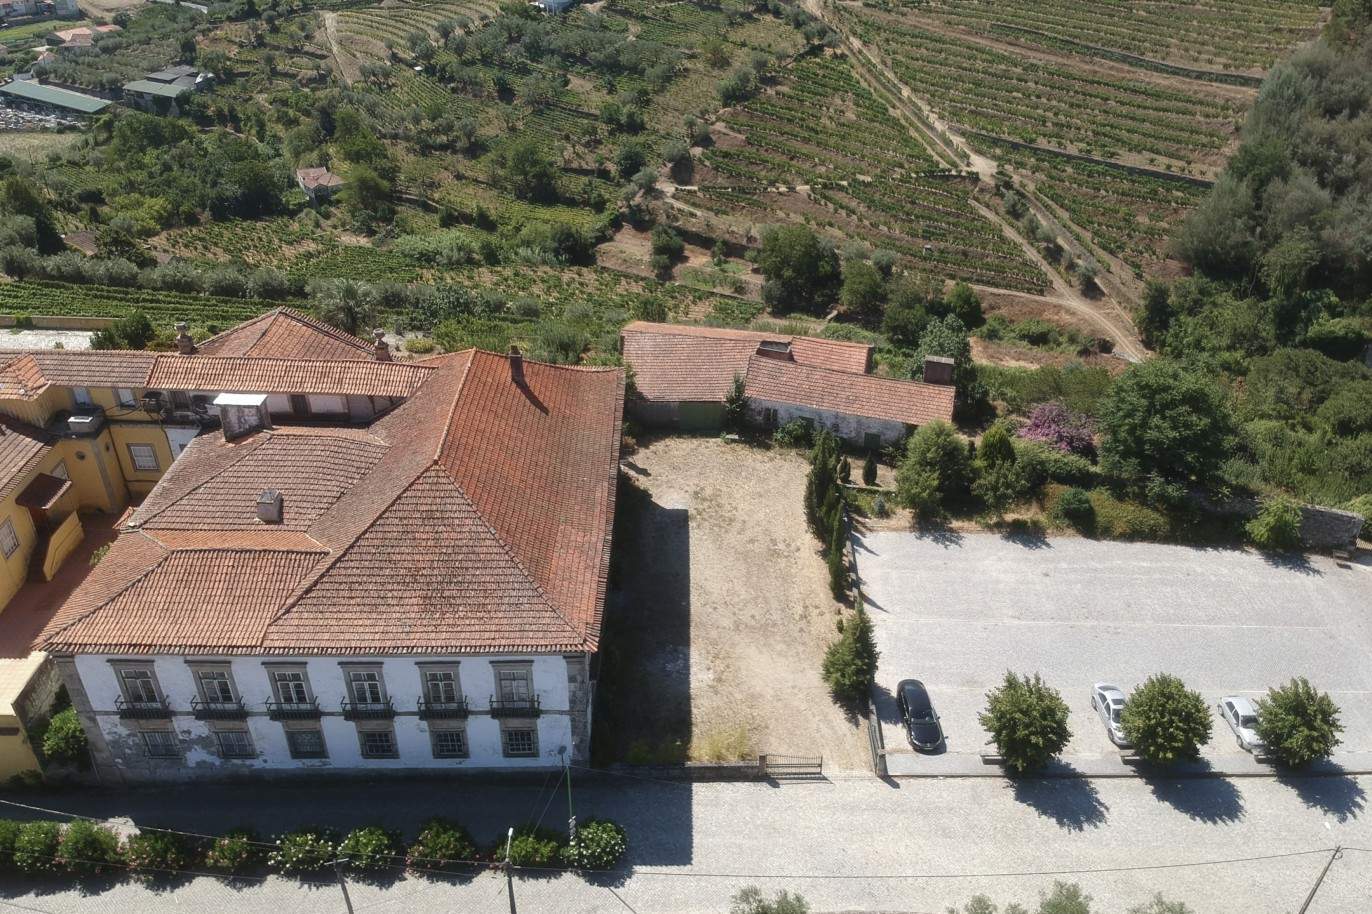 Venta: Palacete para restaurar con jardines y fuente centenaria, en Lamego, región vinícola del Alto Duero, norte de Portugal_207353